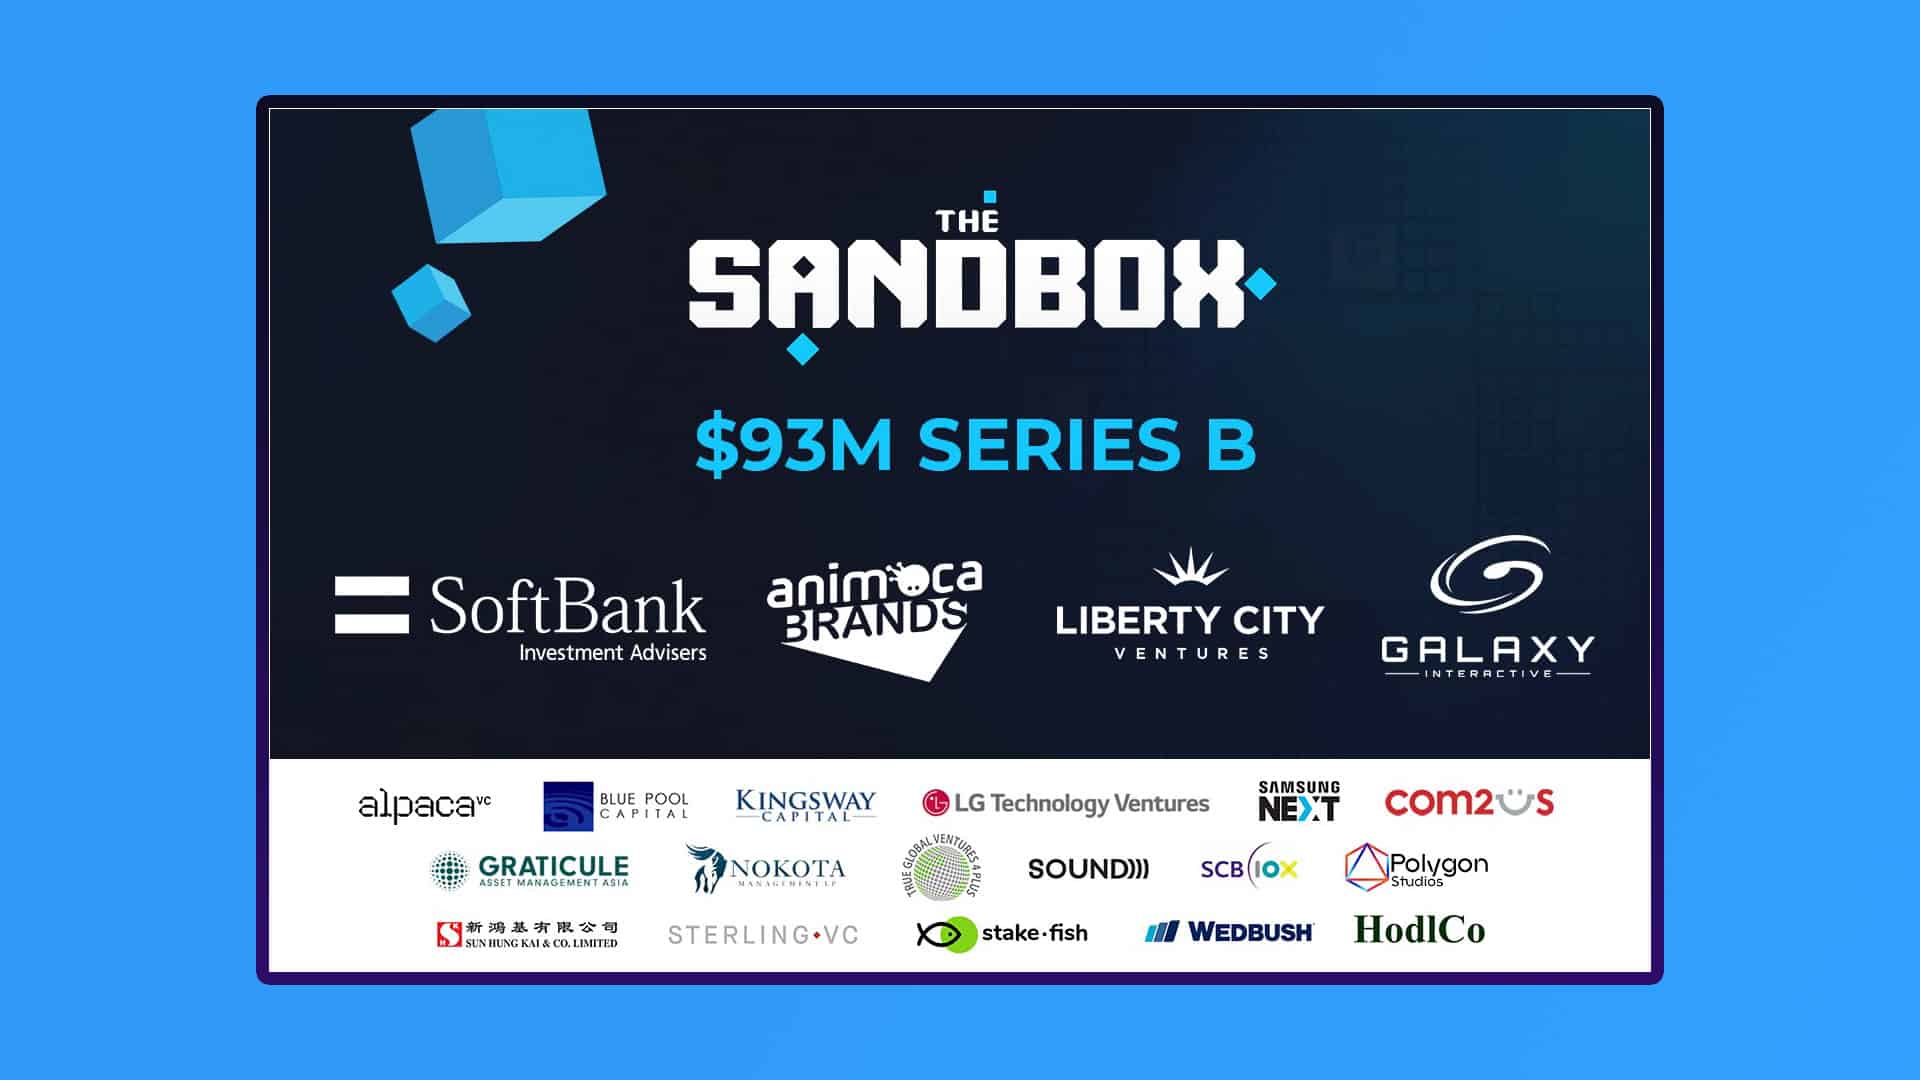 The Sandbox Metaverse 93 million funding